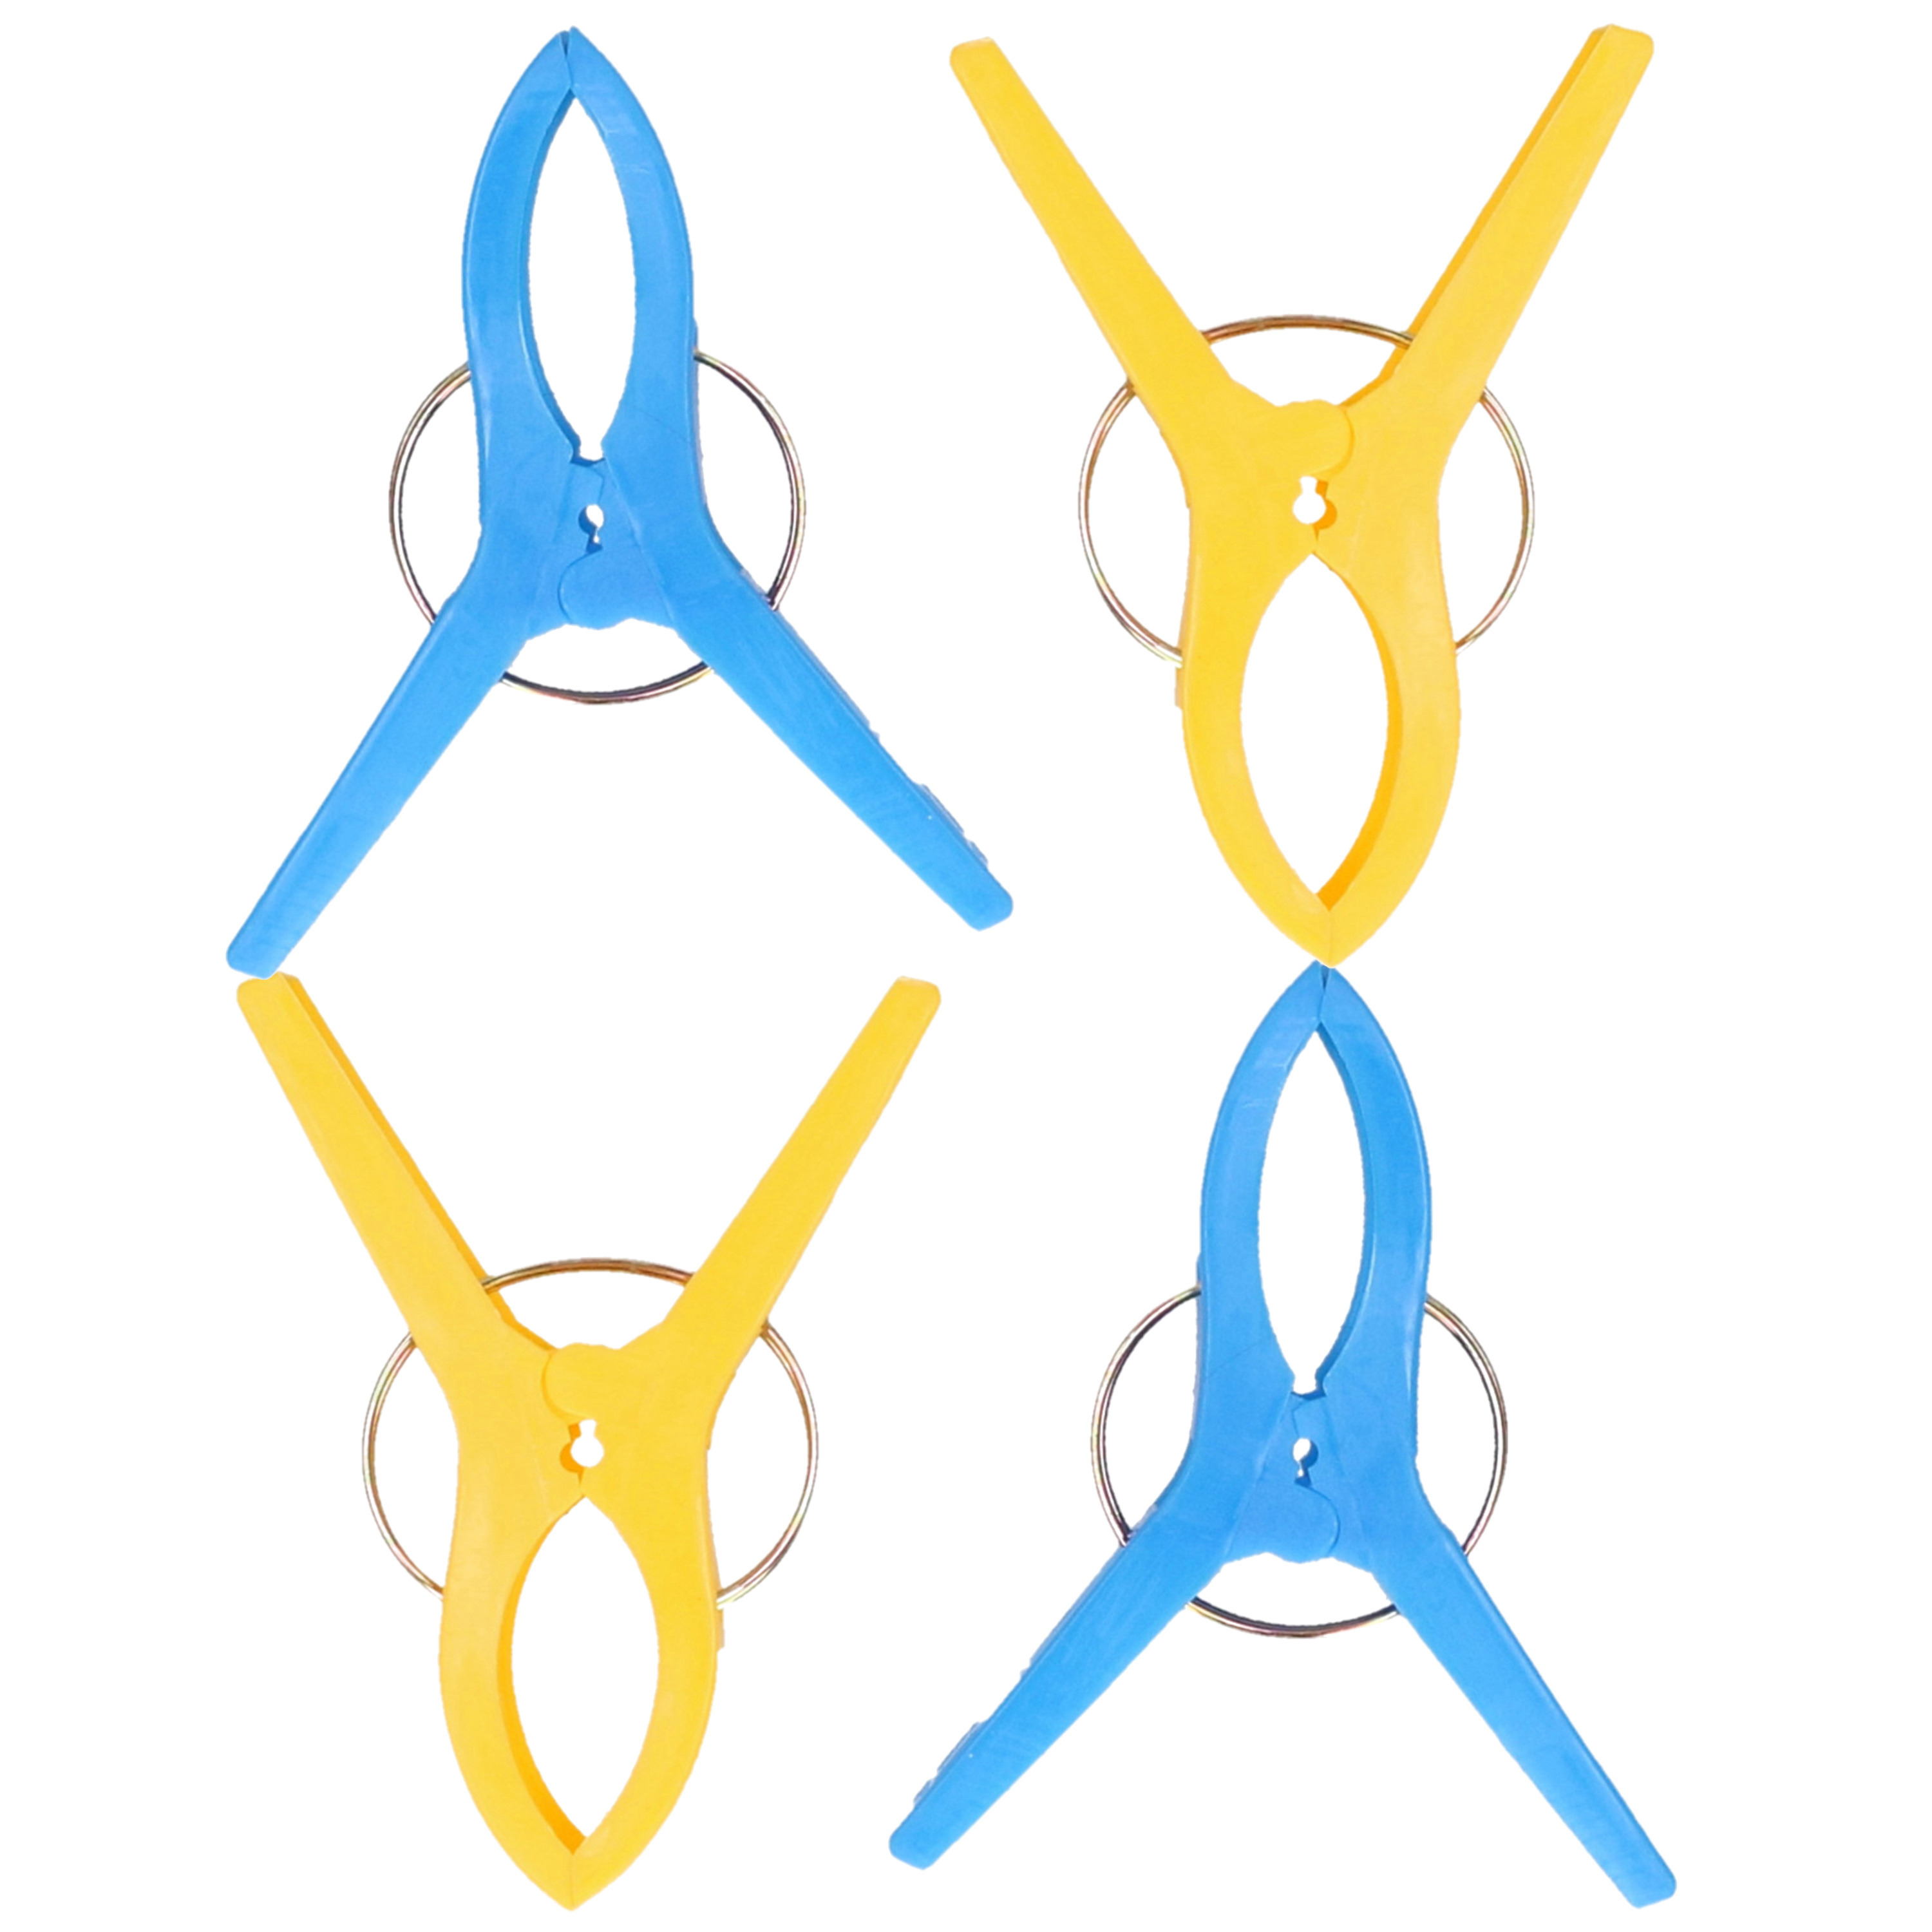 Jedermann Handdoekknijpers XL 10x blauw-geel kunststof 12 cm